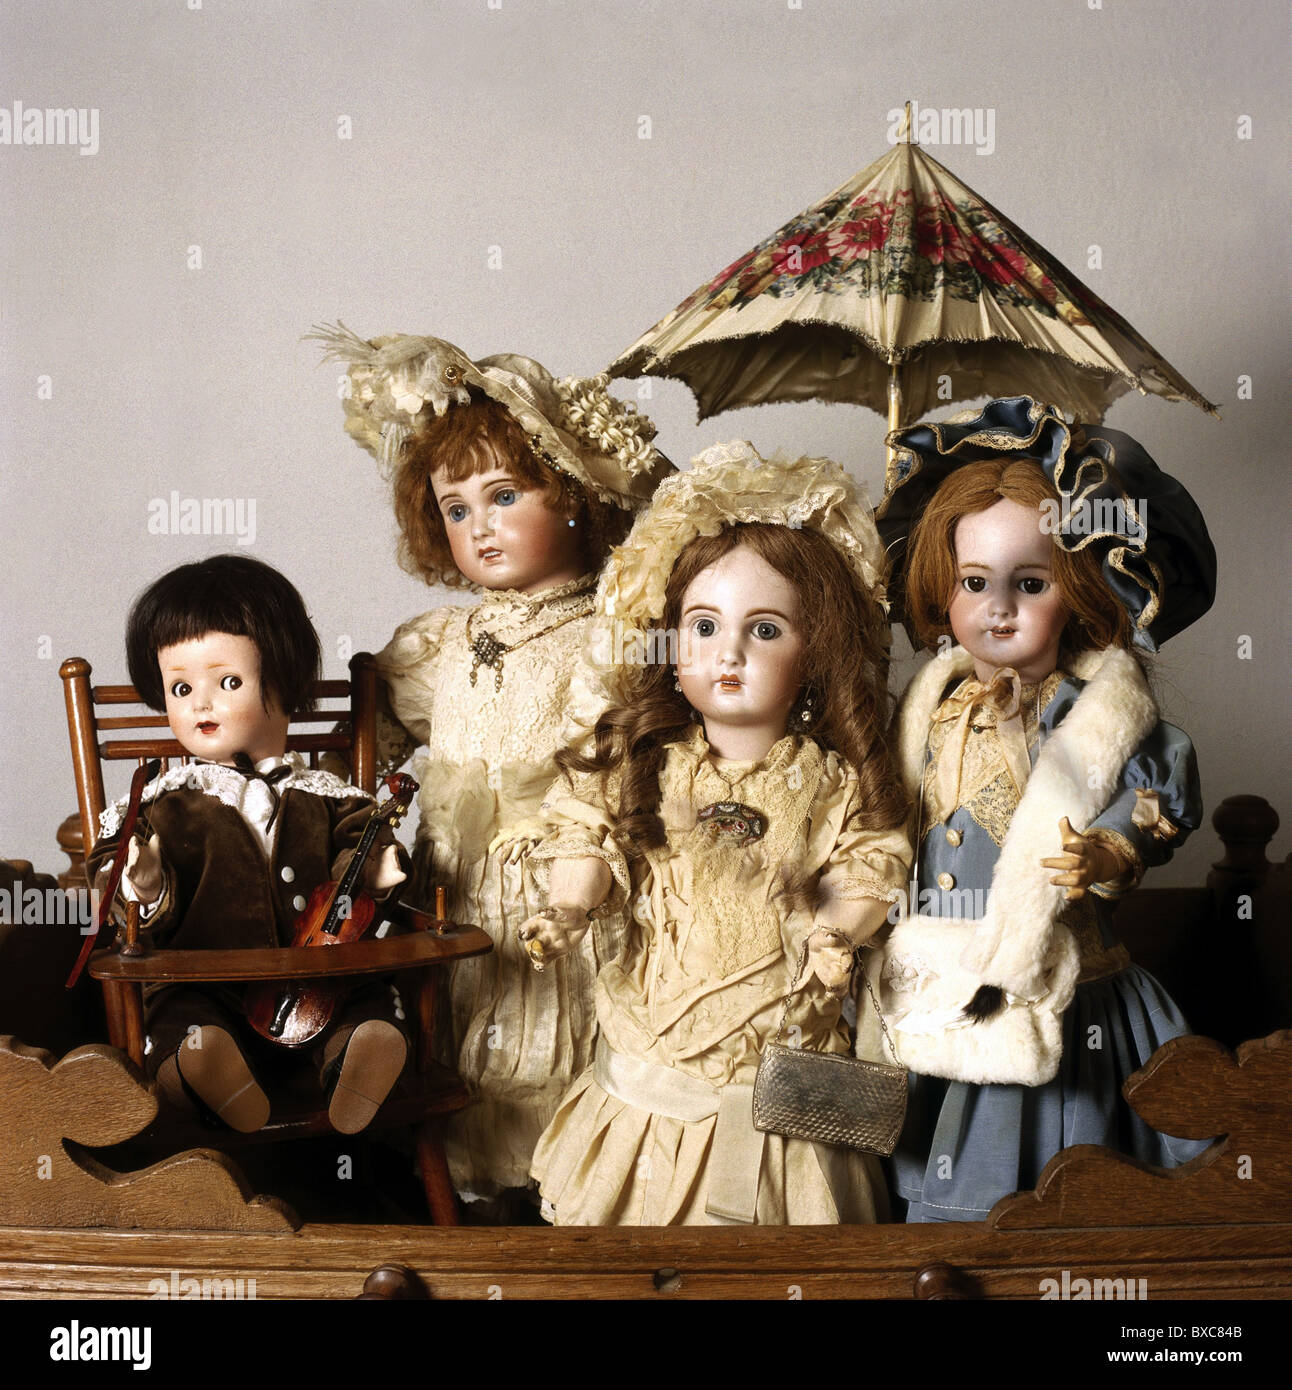 Spielzeug, Puppe, Porzellanpuppen, um 1900, Zusatz-Rechteklärung-nicht verfügbar Stockfoto